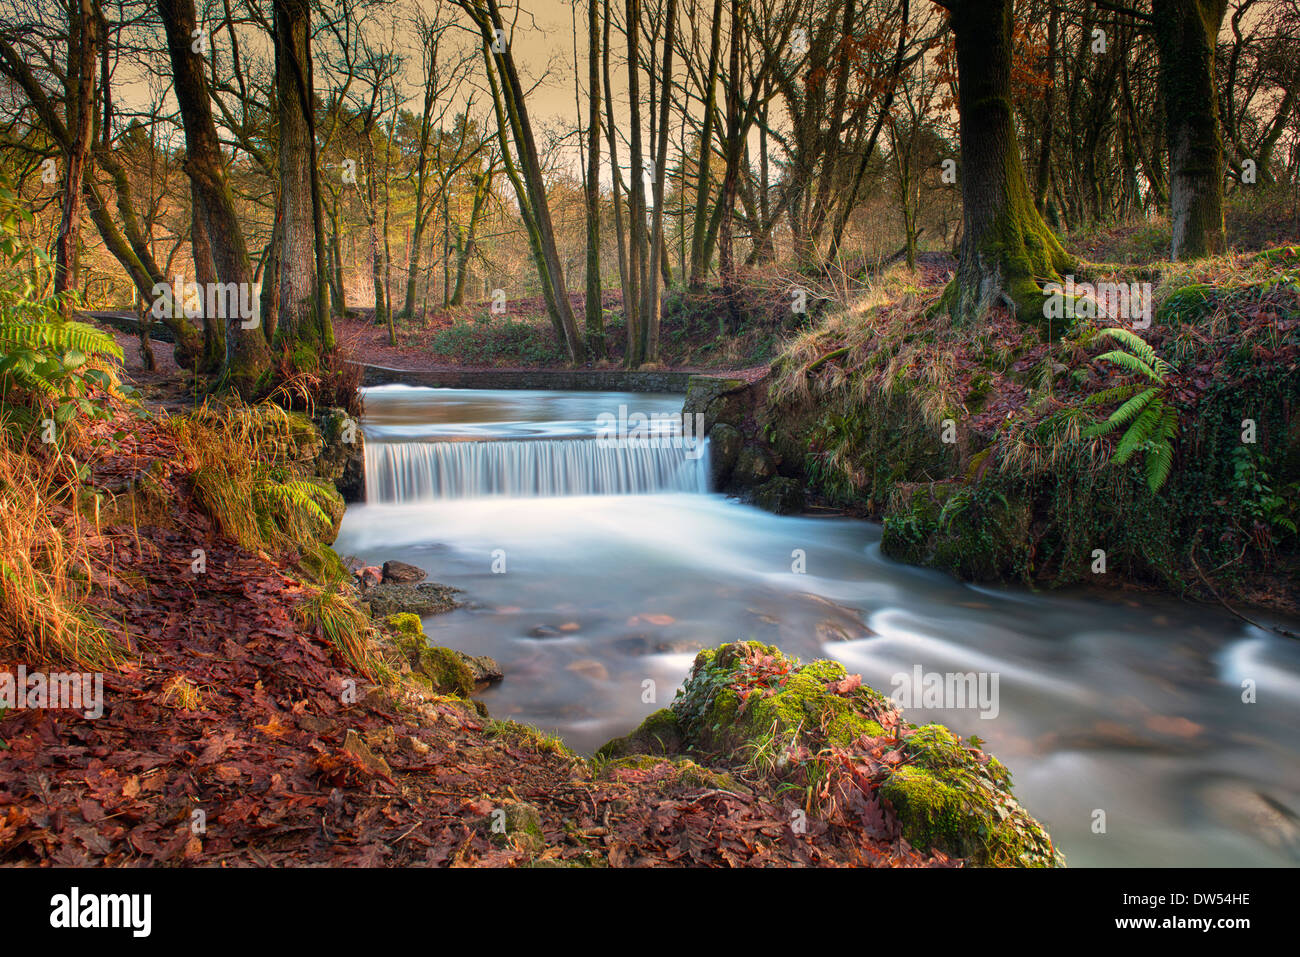 Une chute d'eau en hiver, la forêt de Dean, Gloucestershire, Angleterre, Grande-Bretagne, Royaume-Uni Banque D'Images